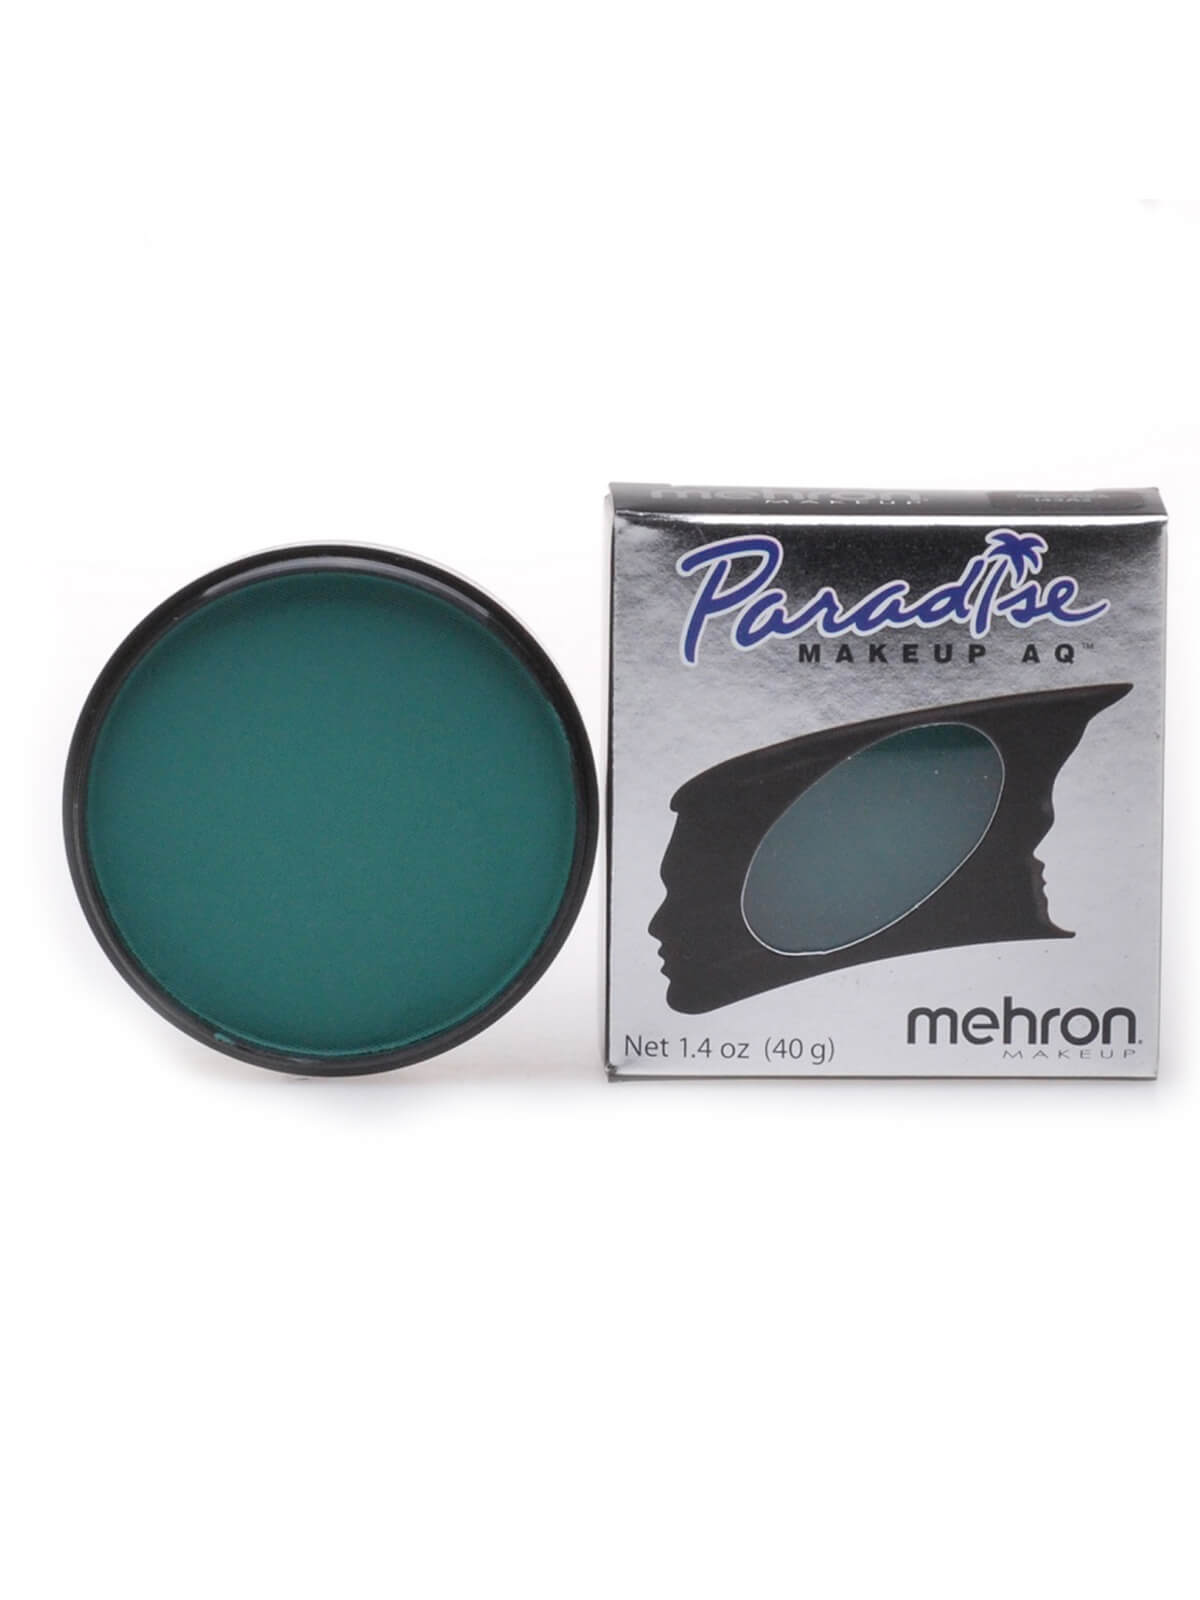 Mehron Paradise Makeup AQ - Nuance - Deep Sea